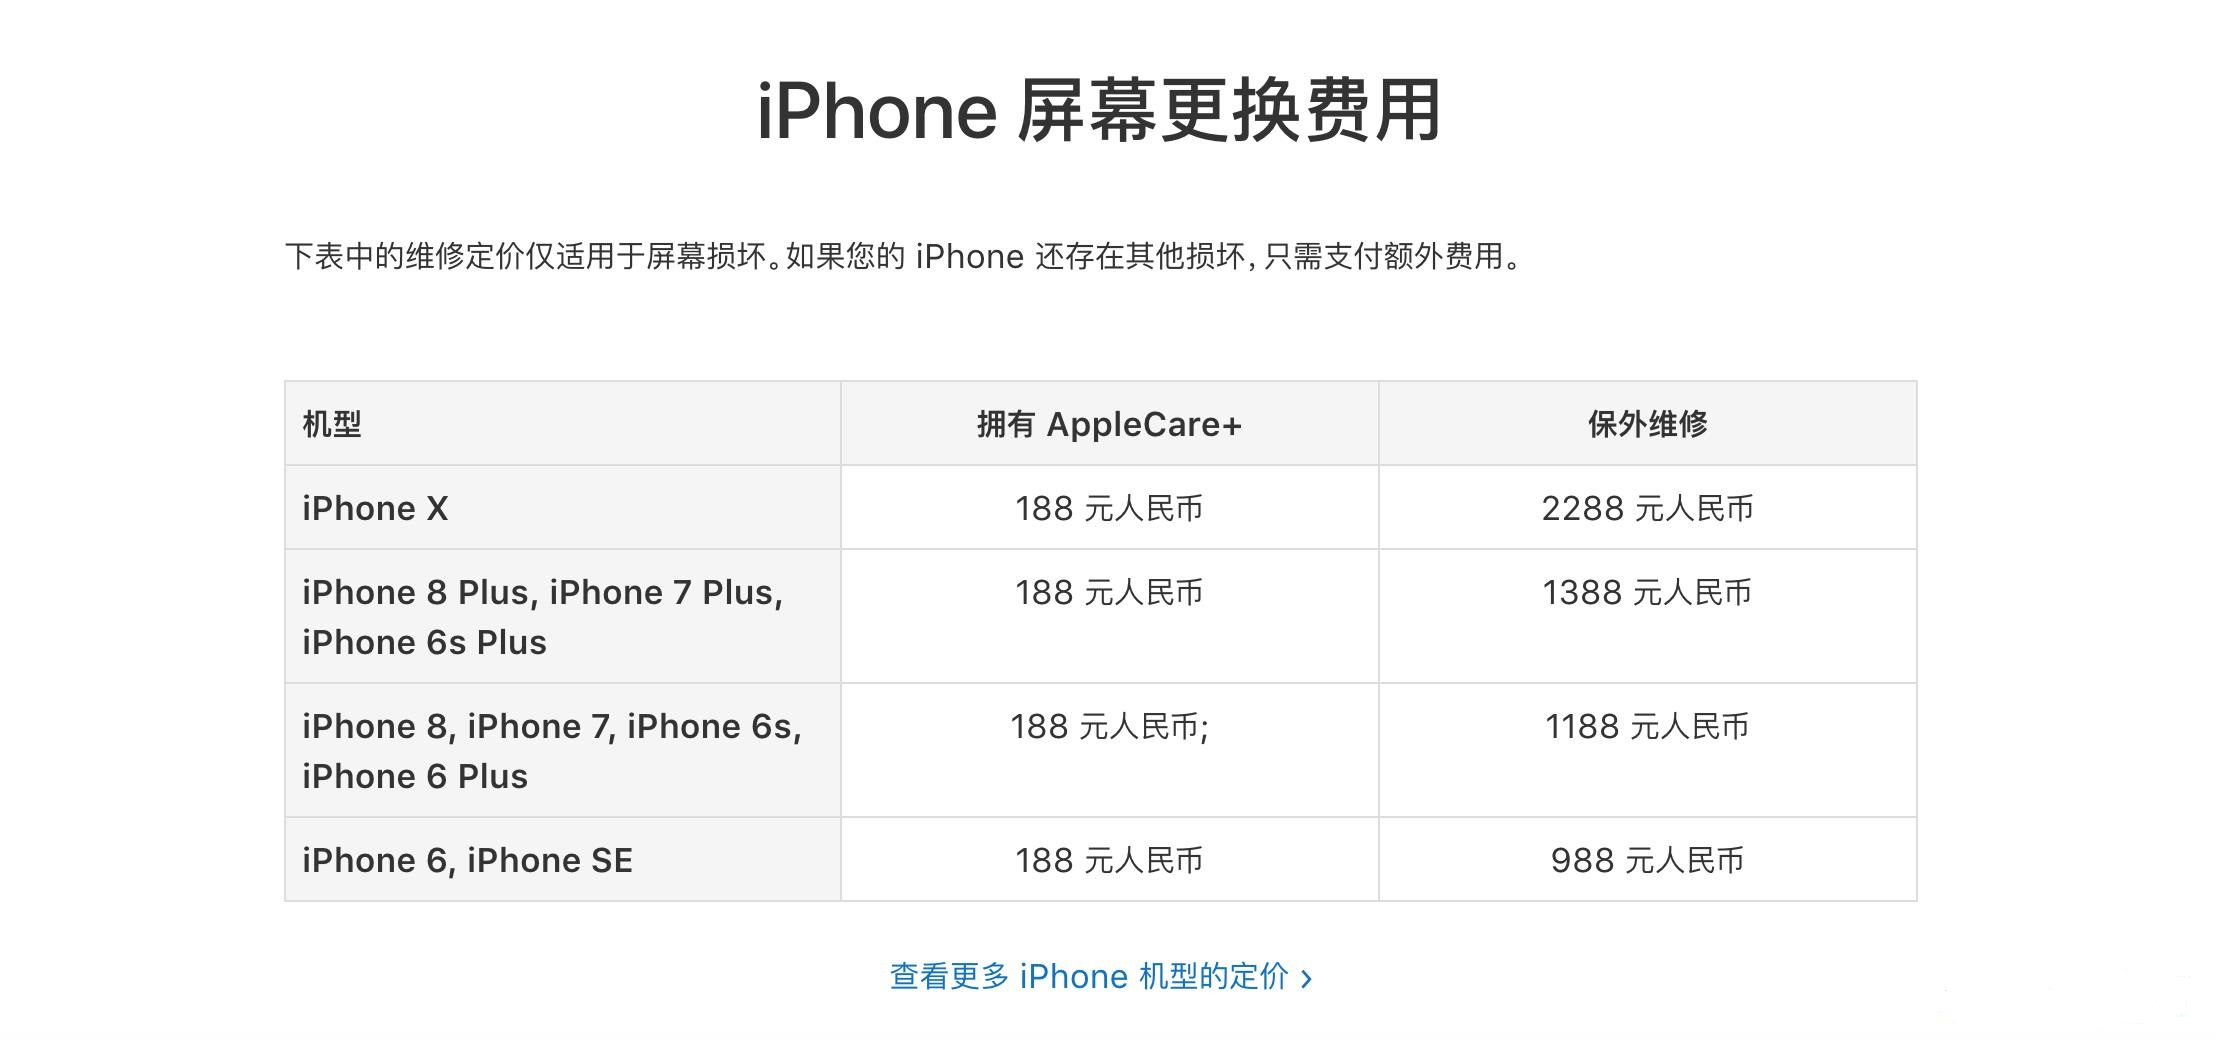 iPhoneX屏幕维修多少钱？苏州苹果维修点告诉你iPhone屏幕维修价格